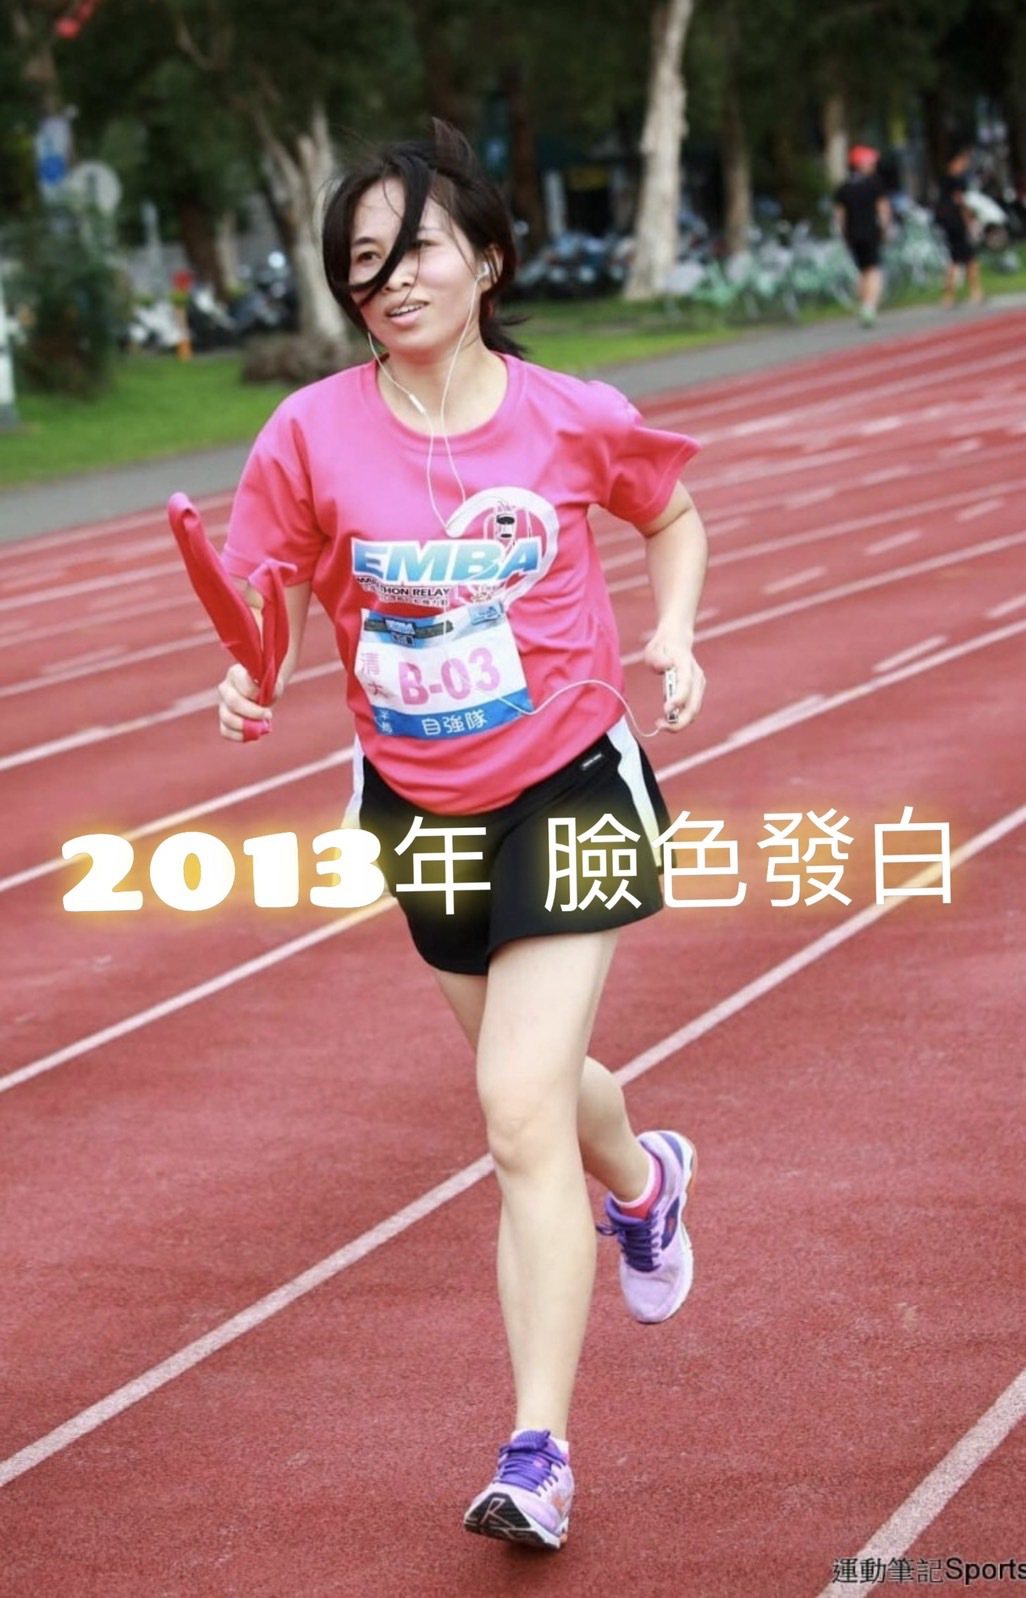 陳詩慧2013年跑步，總是臉色發白。圖片由陳詩慧授權「女子漾」刊出